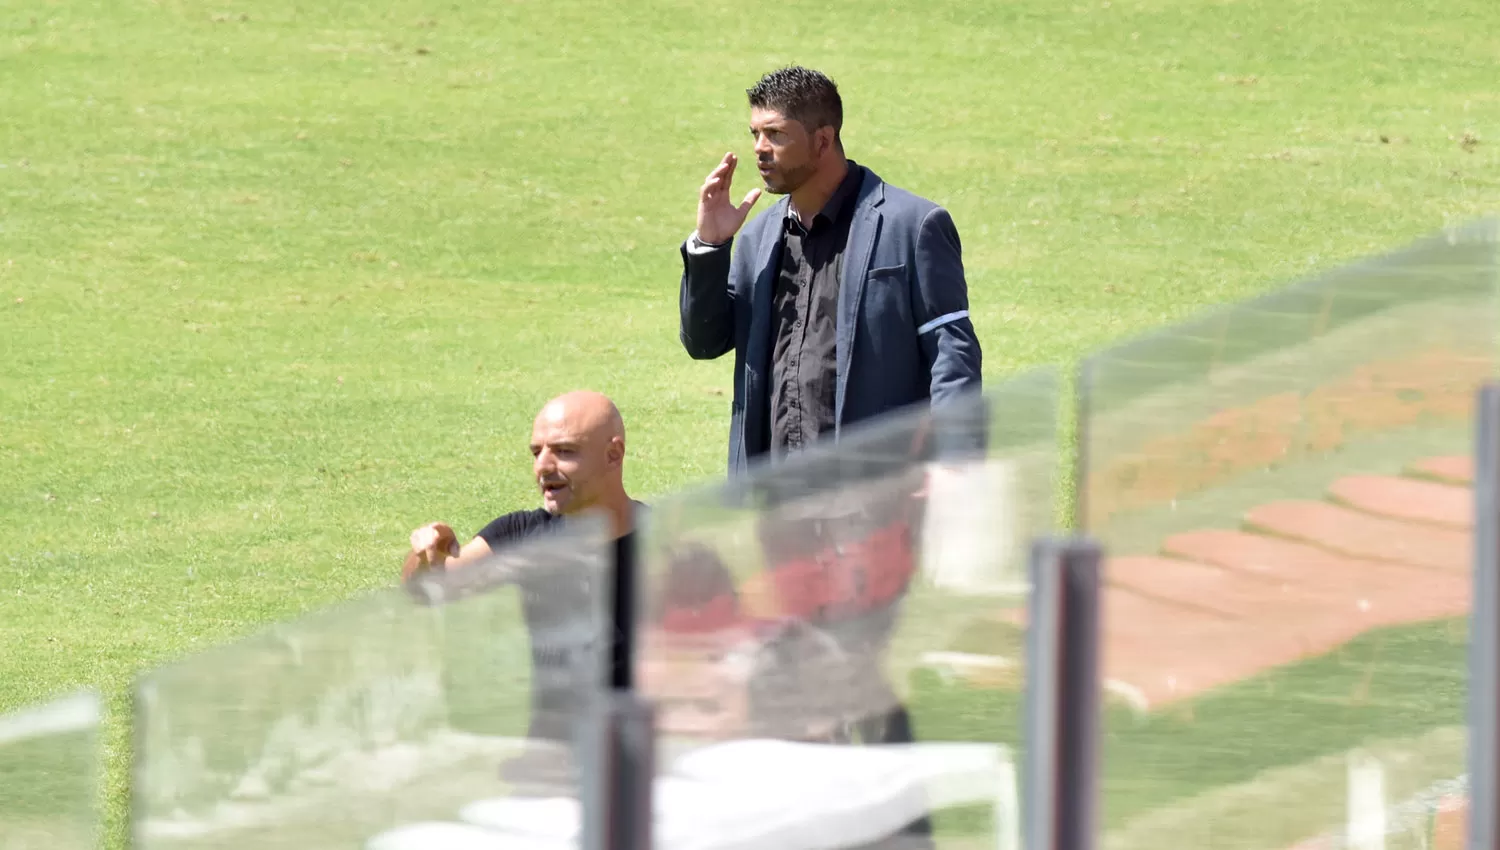 A DOS VOCES. Orsi y Gómez imparten indicaciones a sus jugadores durante el juego entre San Martín y Tigre.